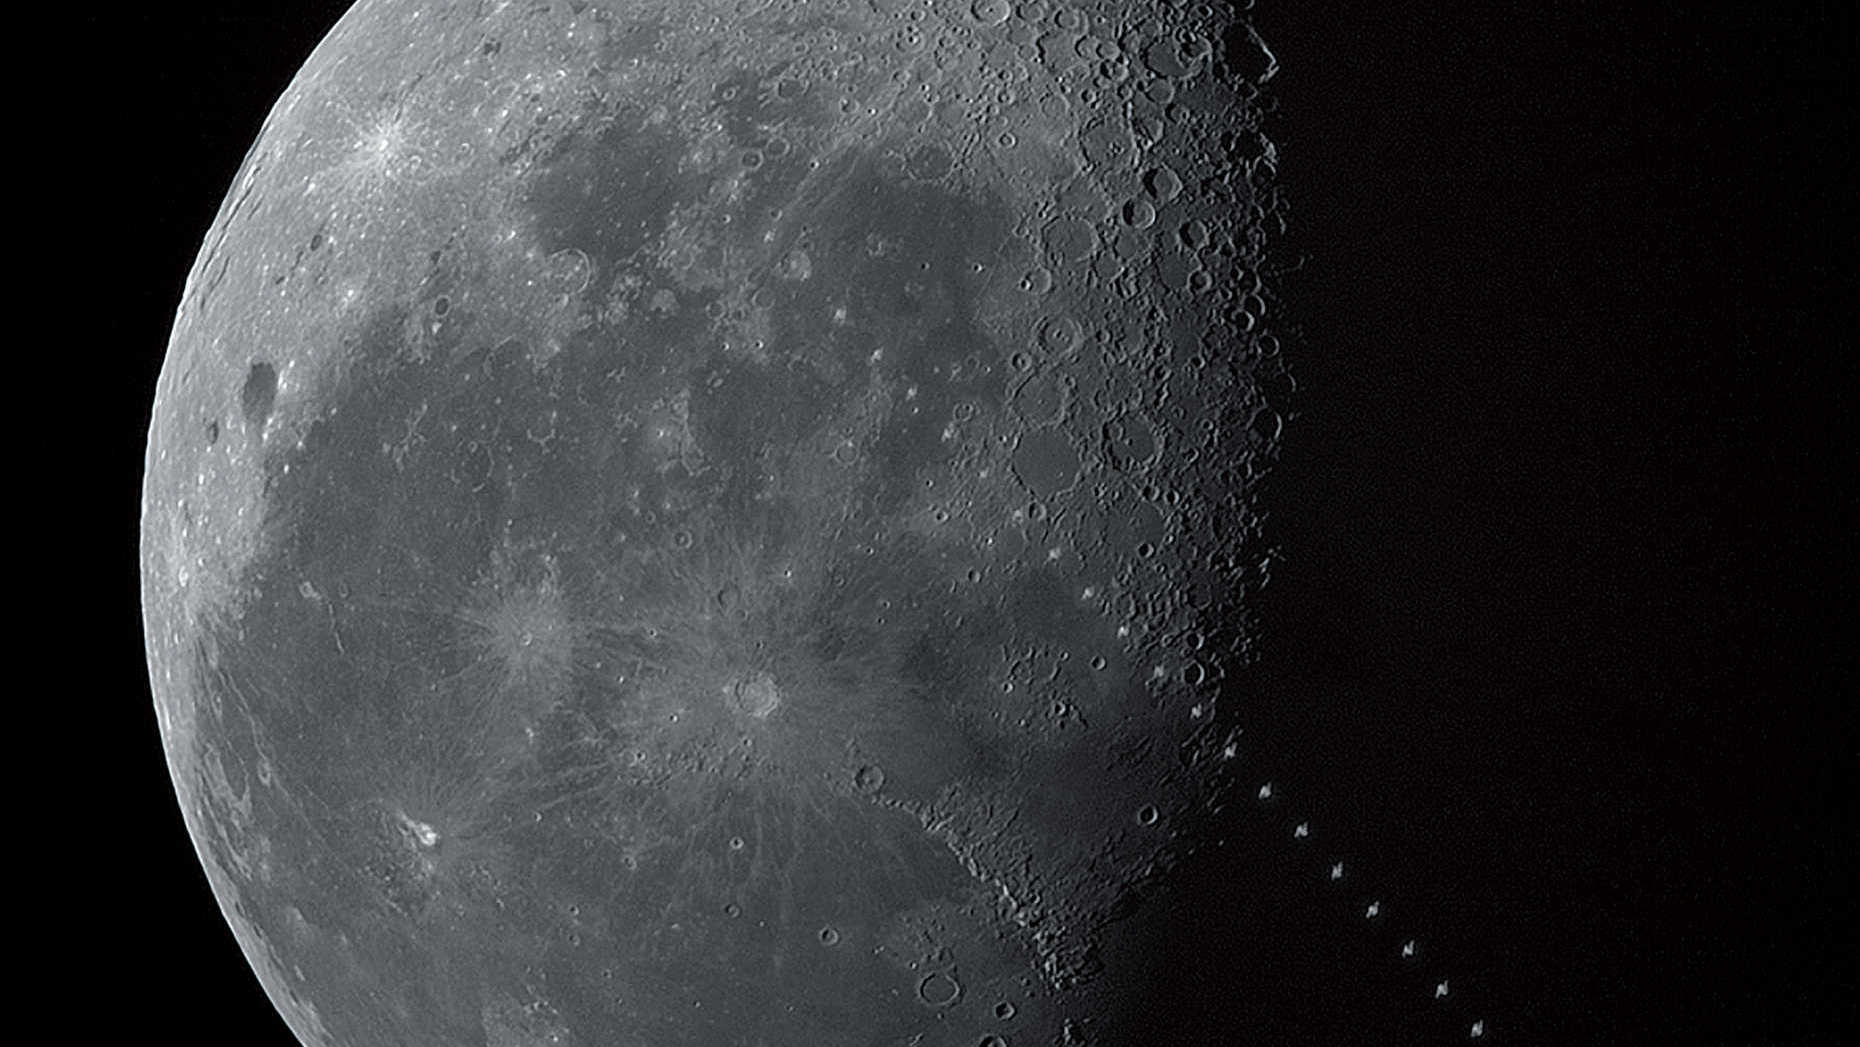 We wczesnych godzinach porannych 17.05.2017 w pogodny letni poranek nad Todtnau w Południowym Szwarcwaldzie można było sfotografować tranzyt Międzynarodowej Stacji Kosmicznej ISS na tle Księżyca przed ostatnią kwadrą. Tranzyt miał miejsce o godzinie 8:05:49 MESZ, gdy Księżyc widoczny był na wysokości 19,4 stopnia nad horyzontem w kierunku SSW. Odległość ISS o jasności 2,3mag od miejsca obserwacji wynosiła 1016,7 km, tranzyt trwał 1,2 sekundy, a Stacja miała małe rozmiary kątowe. Zdjęcie jest składanką z 51 klatek (Photoshop). U. Dittler